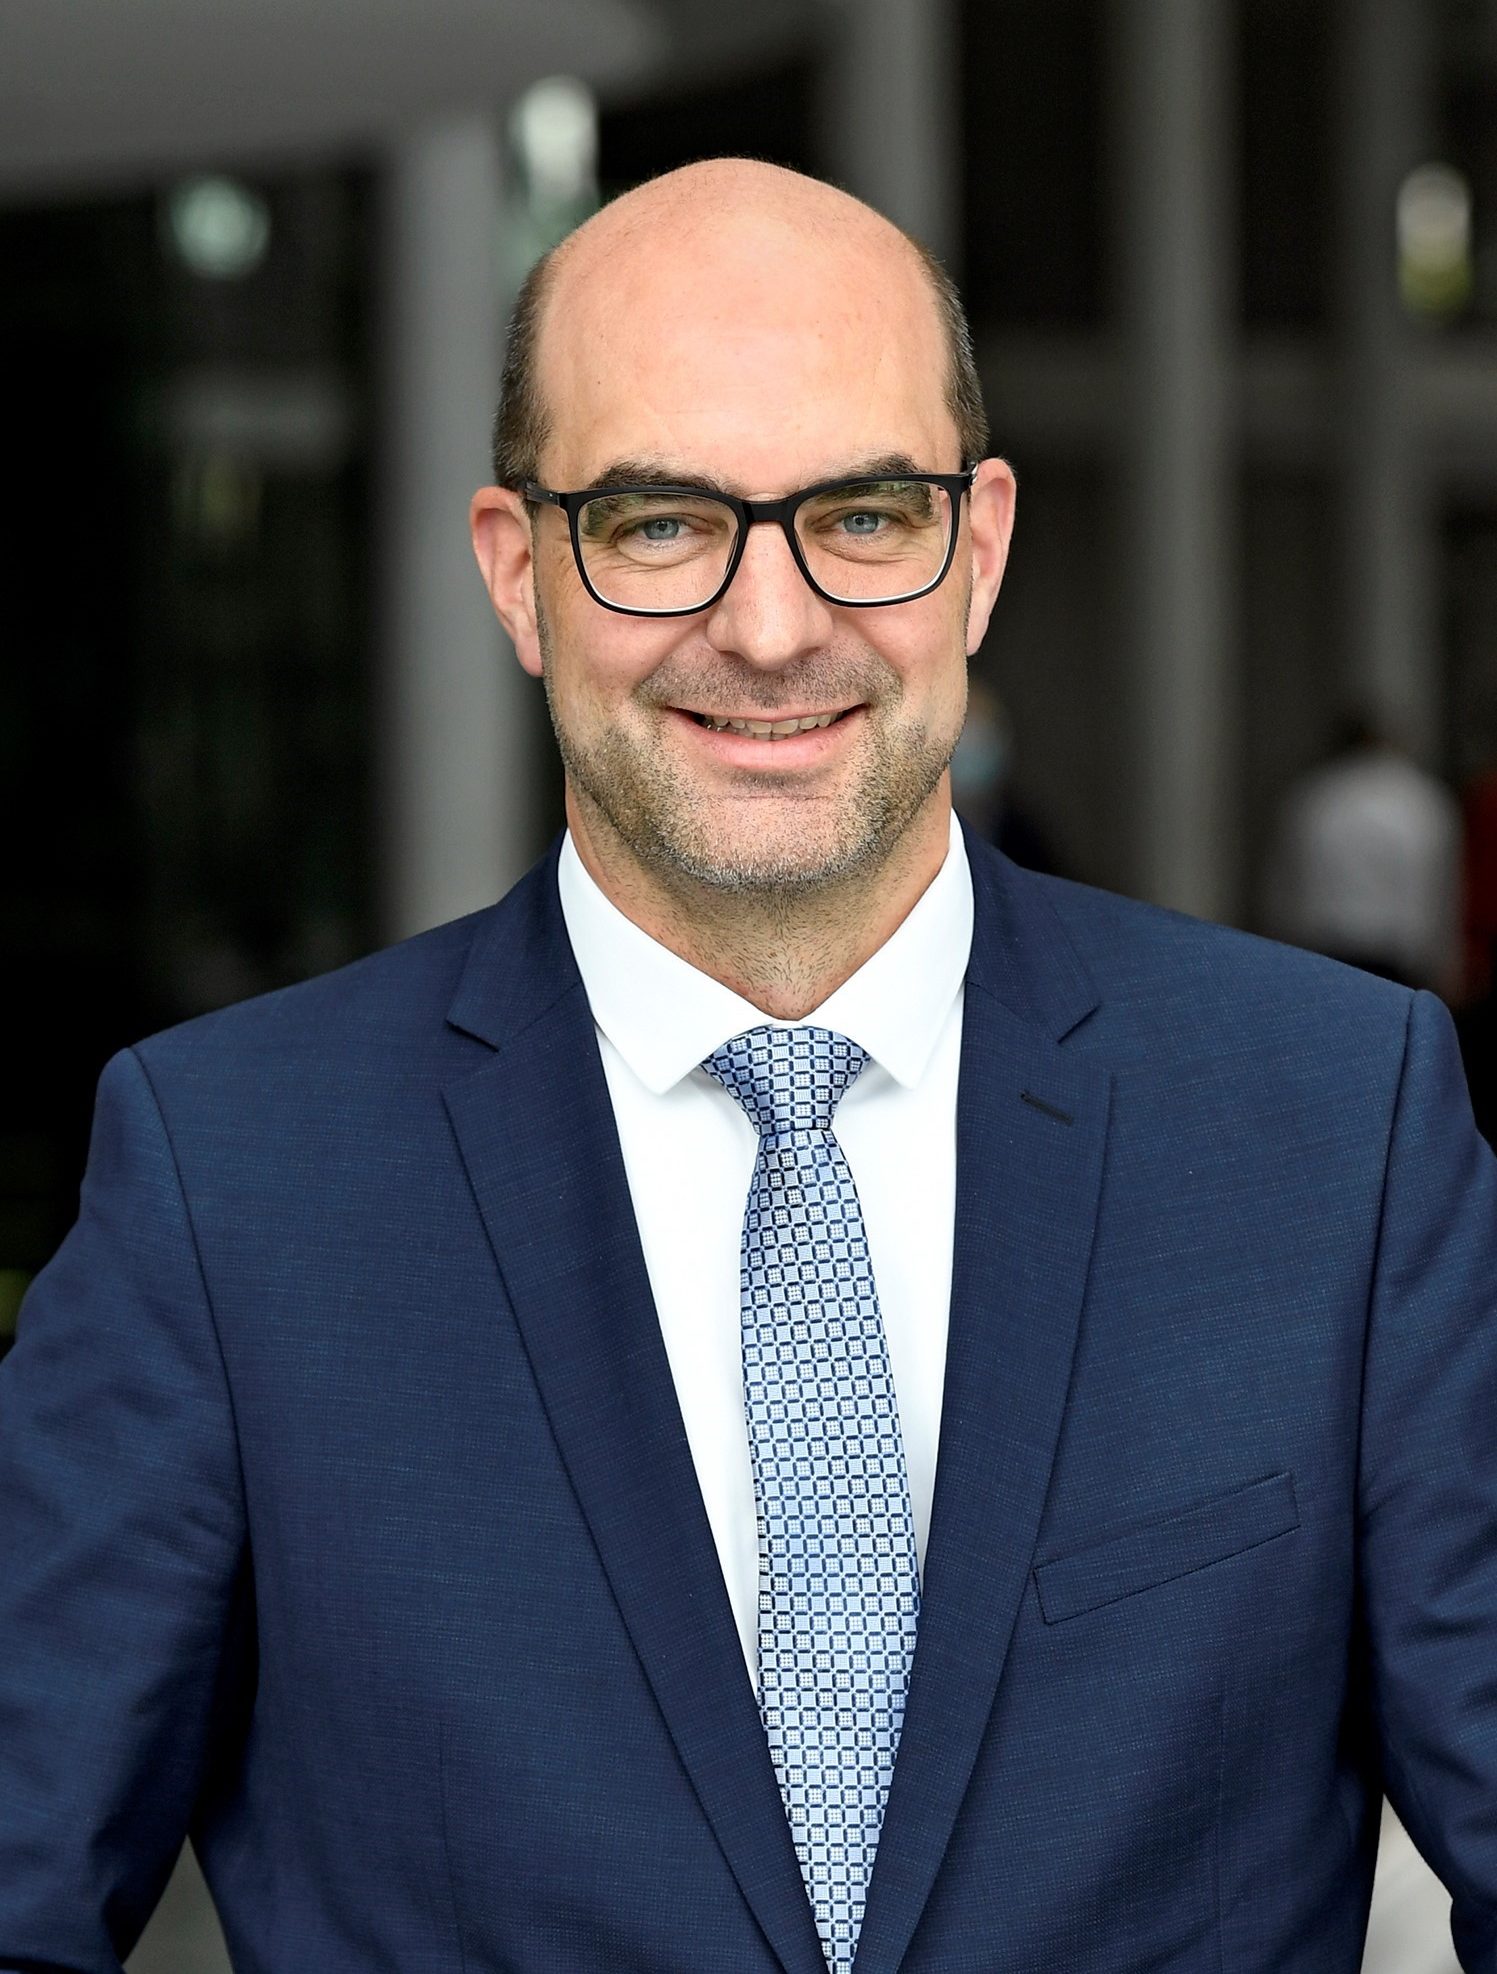 Michael Kießling, MdB (Fachpolitischer Sprecher der CSU im Bundestag für Infrastruktur, Bauwesen und Mobilität, CSU)